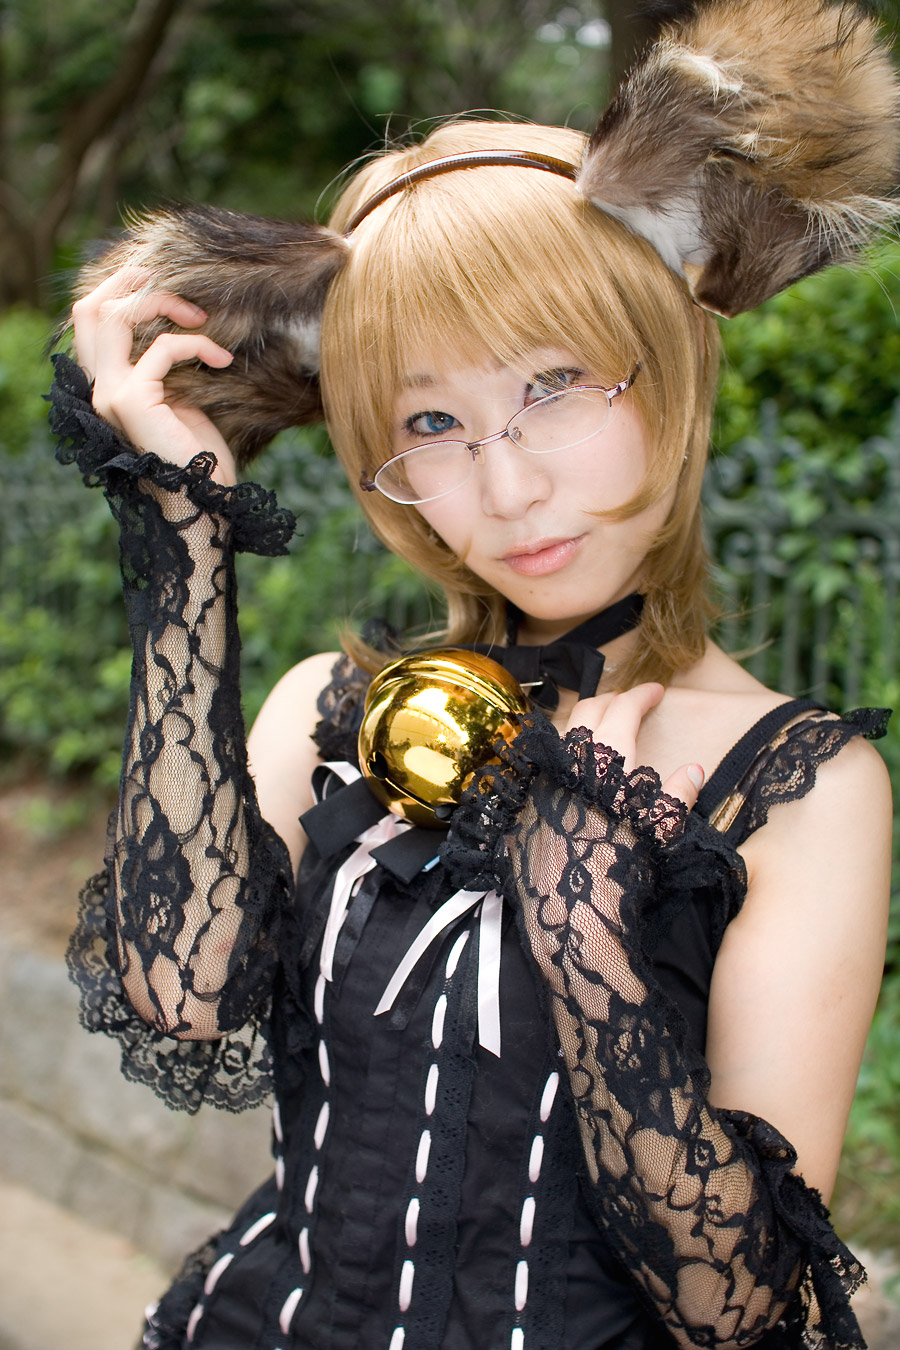 Safebooru - animal ears bell blonde hair cosplay dog ears dress glasses ...